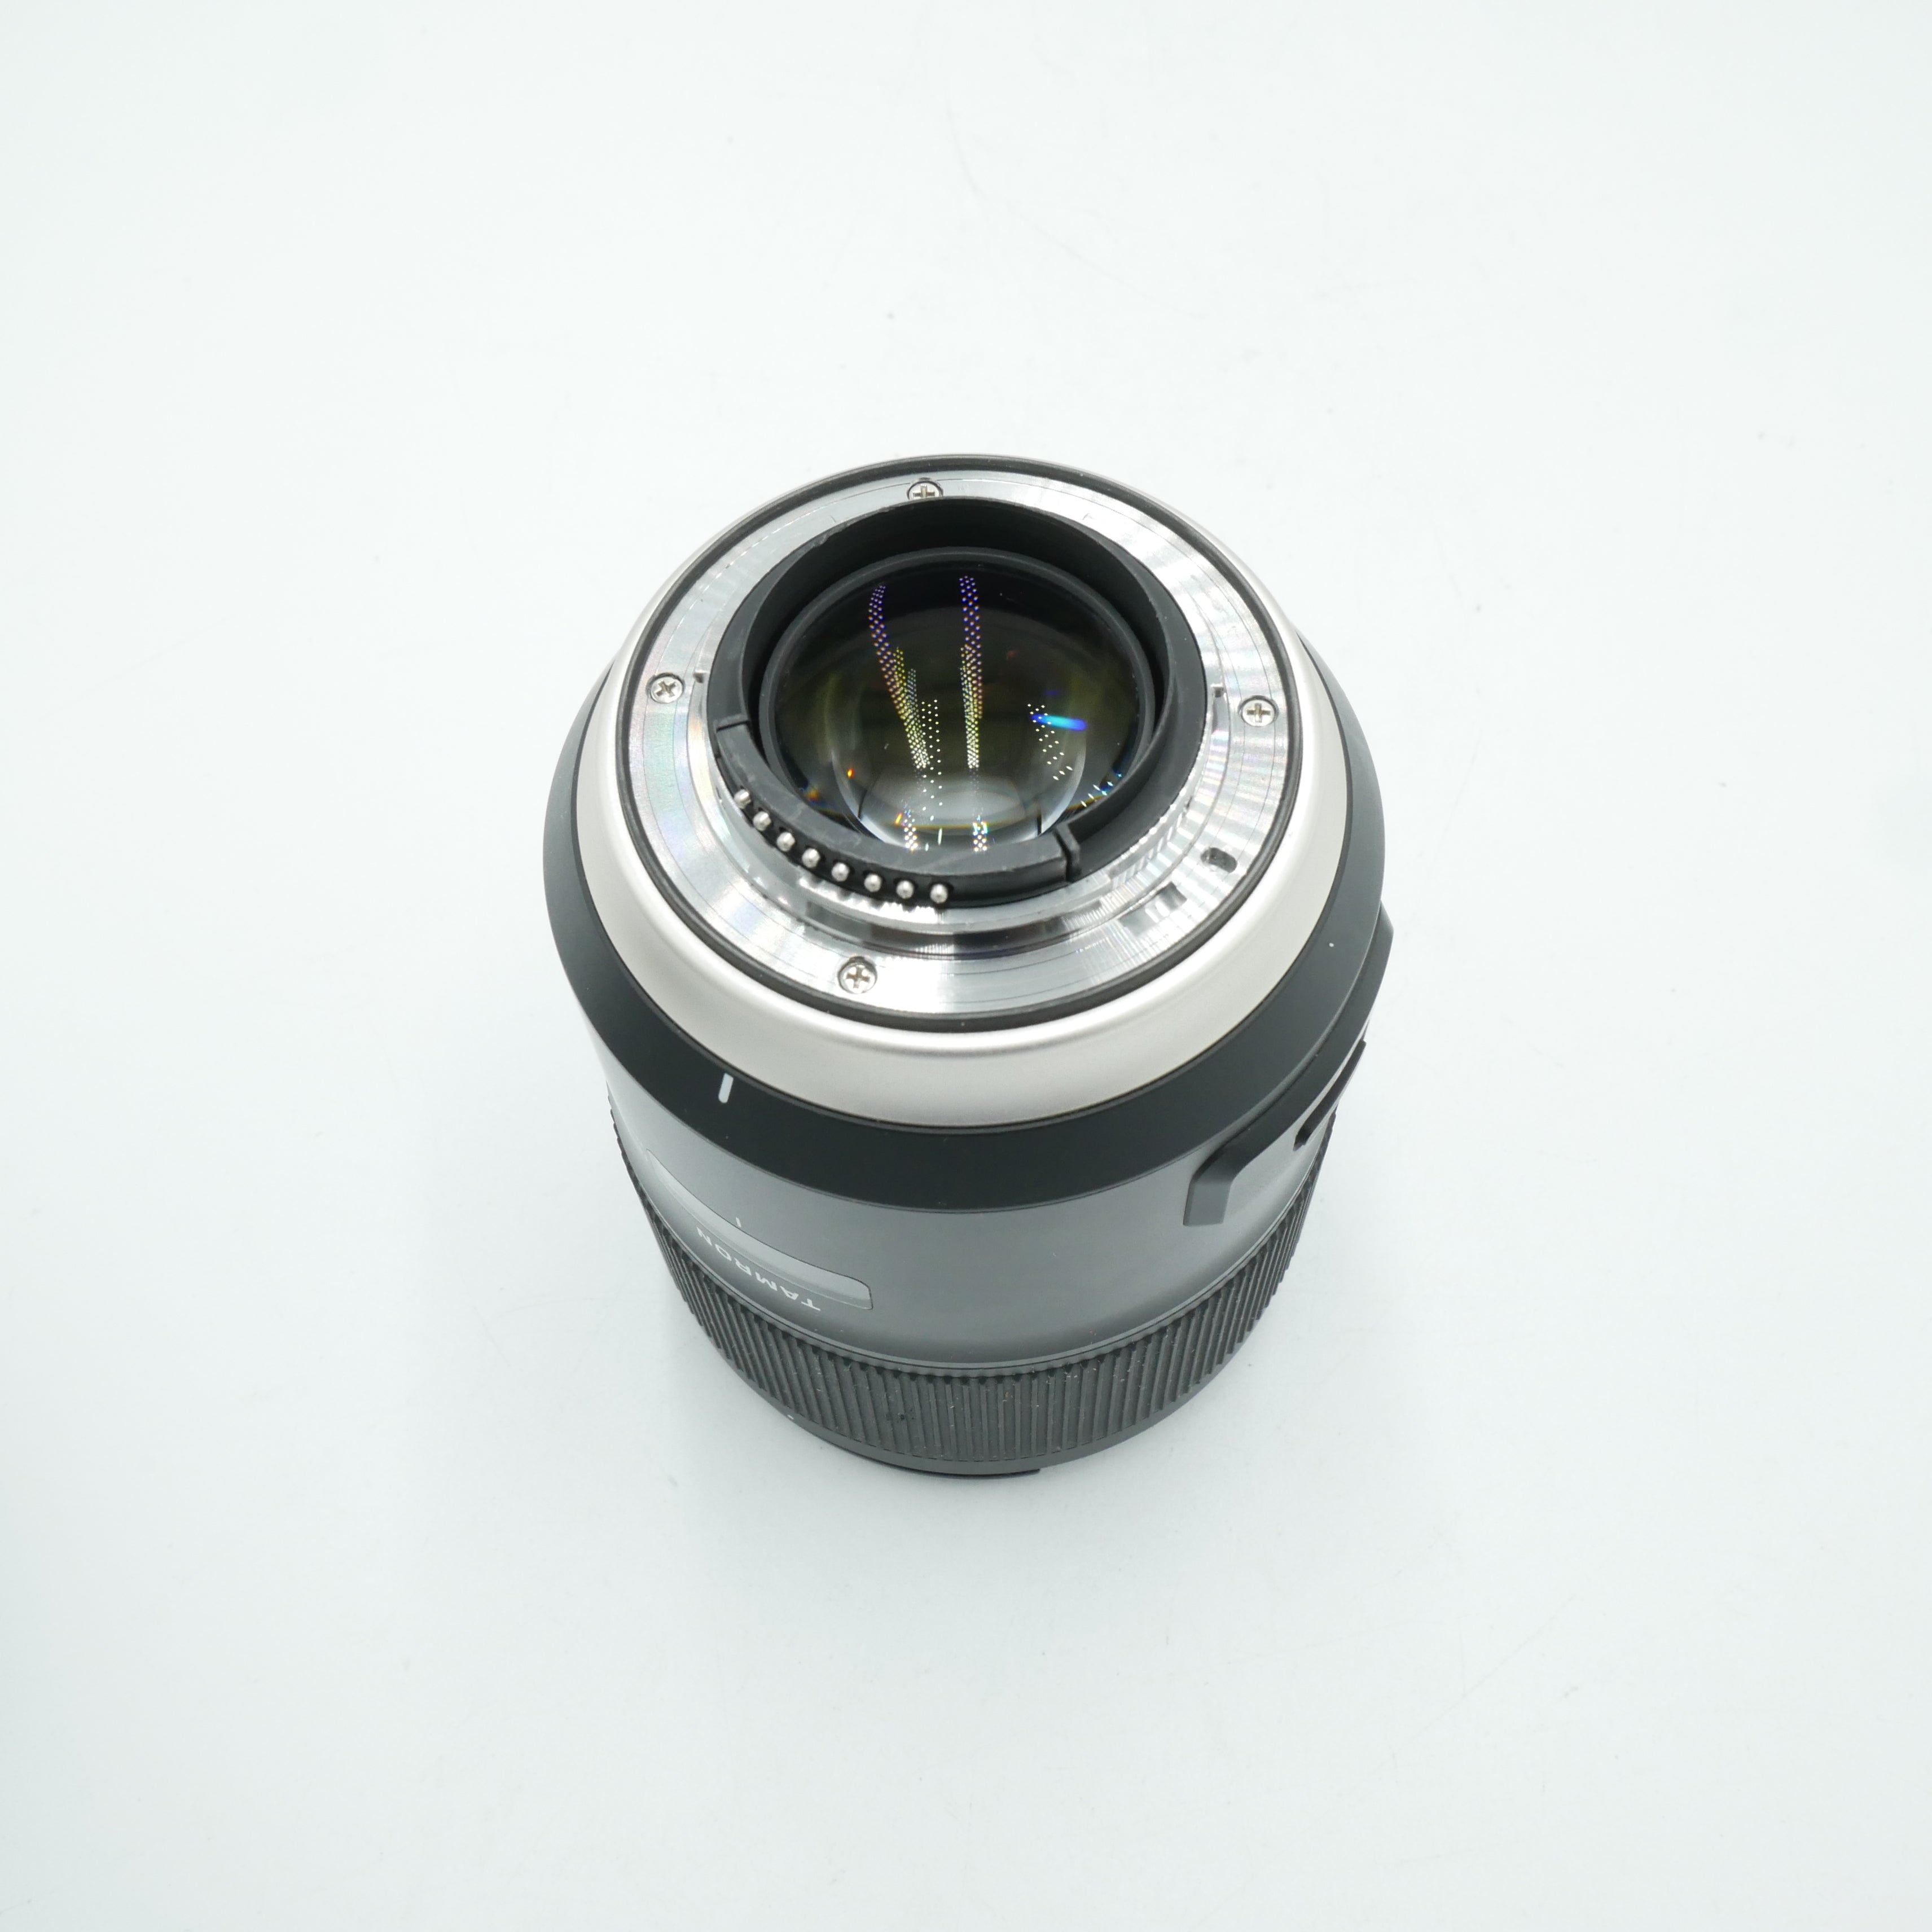 Tamron SP 35mm f/1.4 Di USD Lens - F mount